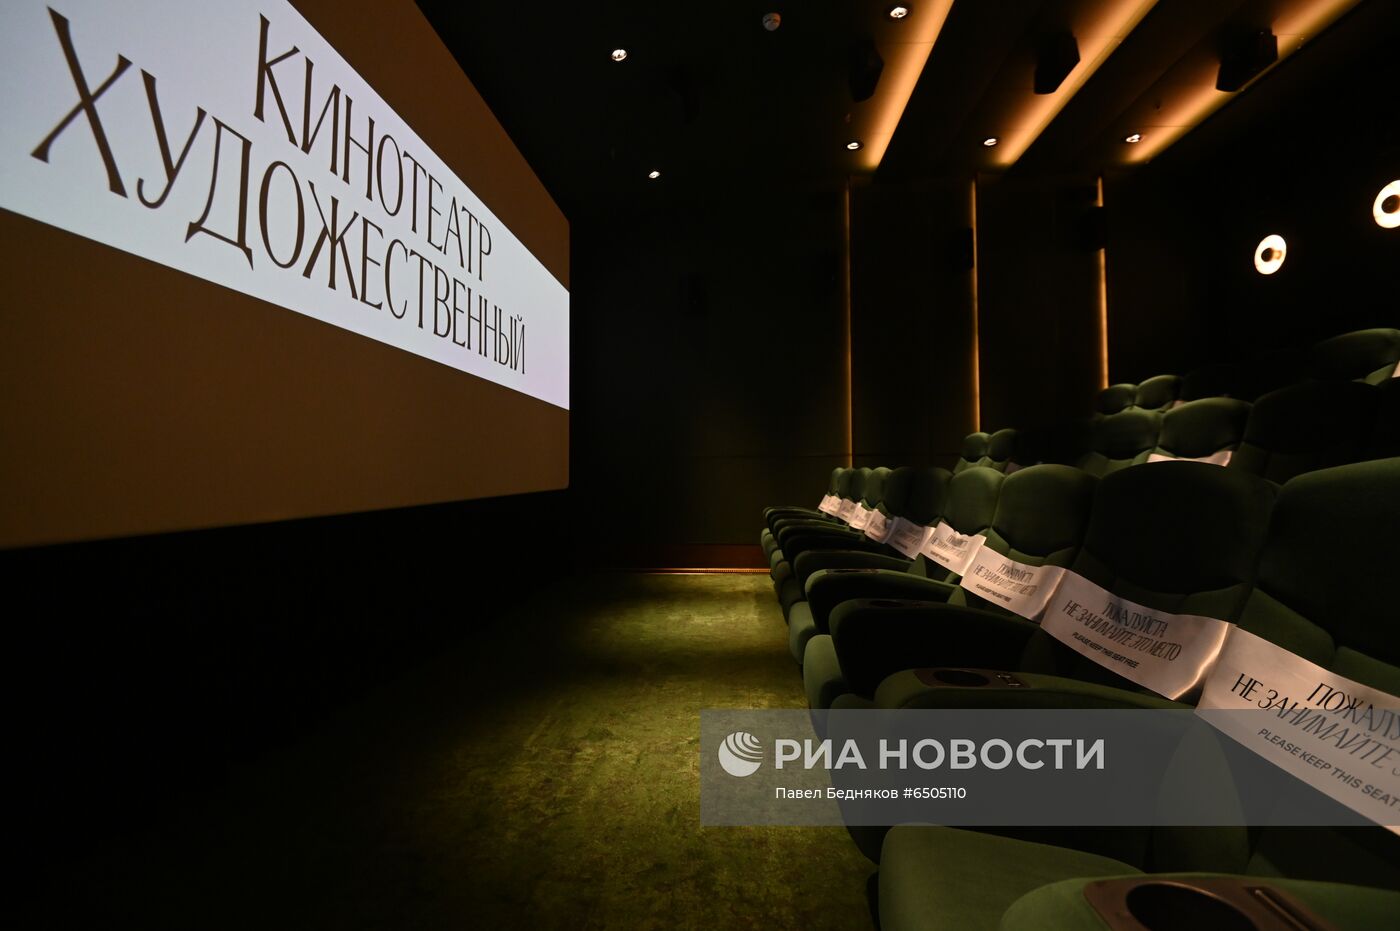 Кинотеатр "Художественный" после реставрации